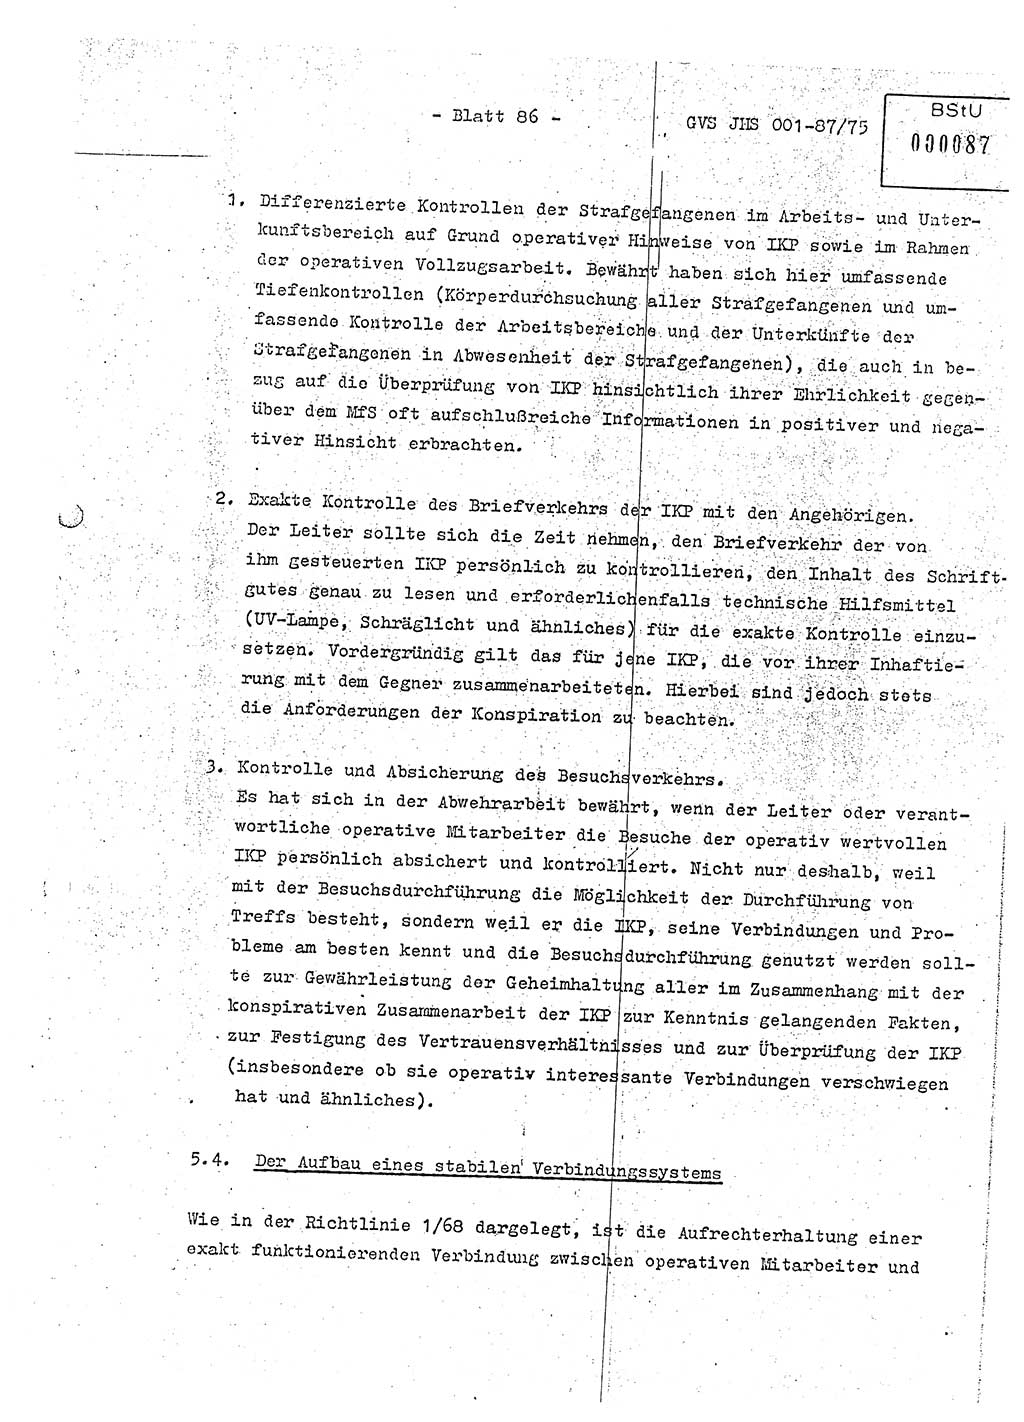 Diplomarbeit Hauptmann Volkmar Heinz (Abt. ⅩⅣ), Oberleutnant Lothar Rüdiger (BV Lpz. Abt. Ⅺ), Ministerium für Staatssicherheit (MfS) [Deutsche Demokratische Republik (DDR)], Juristische Hochschule (JHS), Geheime Verschlußsache (GVS) o001-87/75, Potsdam 1975, Seite 86 (Dipl.-Arb. MfS DDR JHS GVS o001-87/75 1975, S. 86)